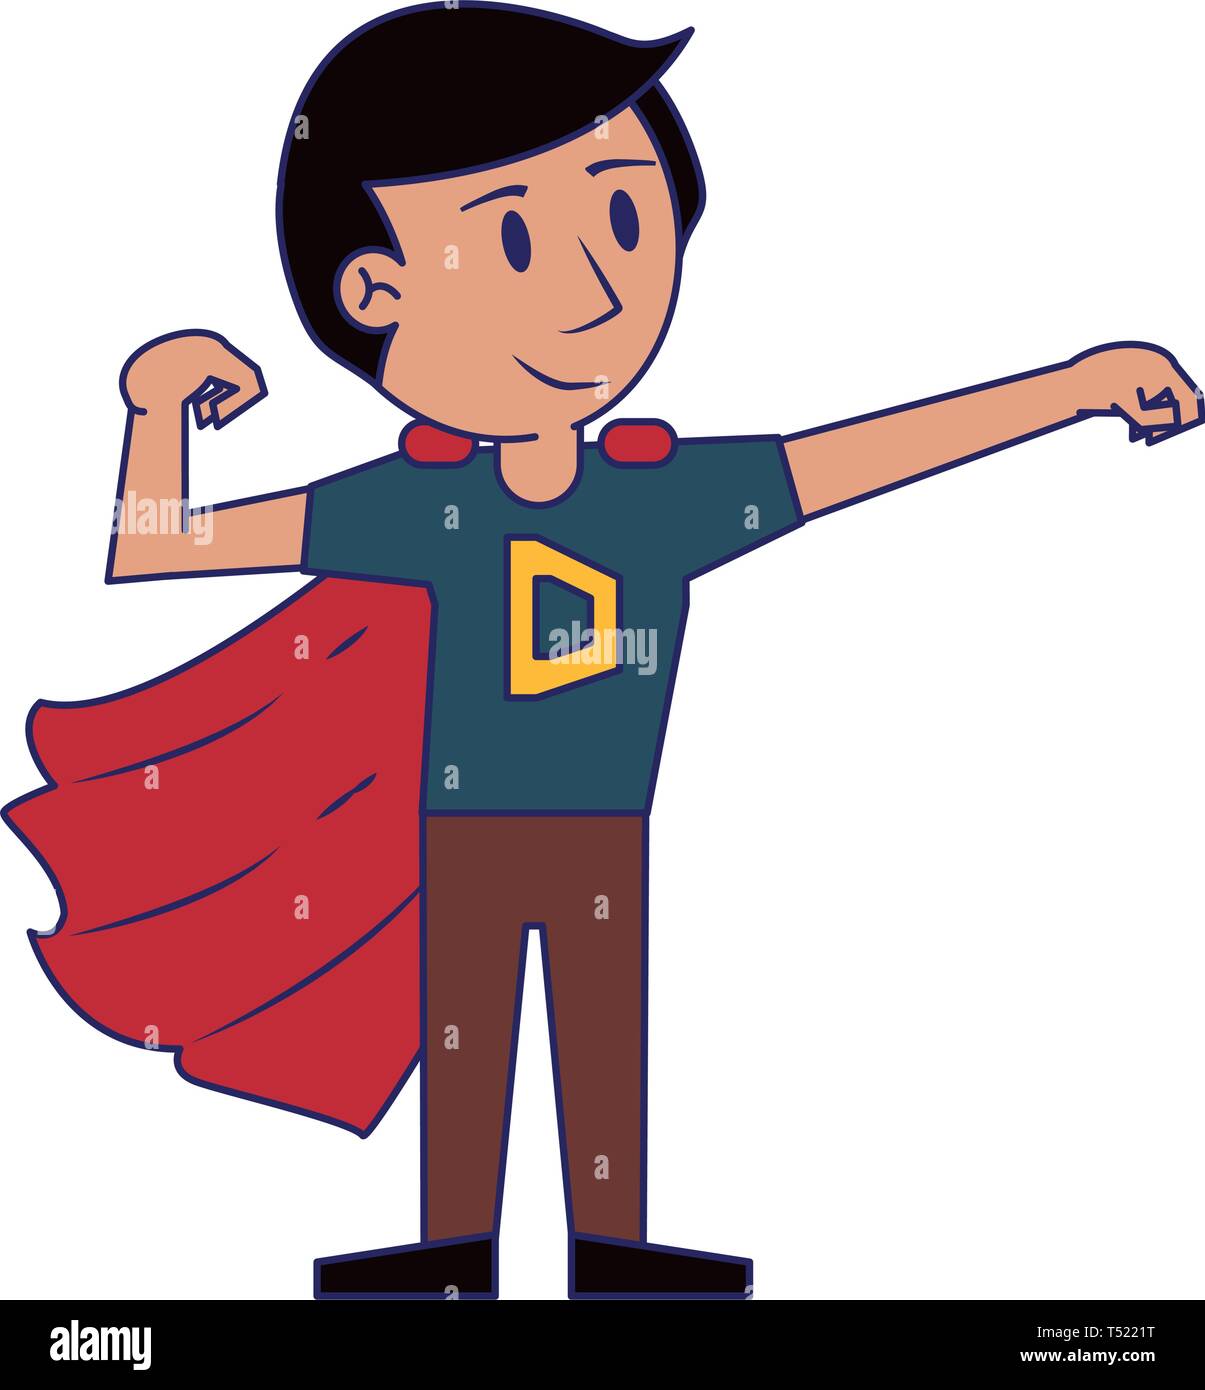 Super dad hero cartoon Stock Vector Image & Art - Alamy